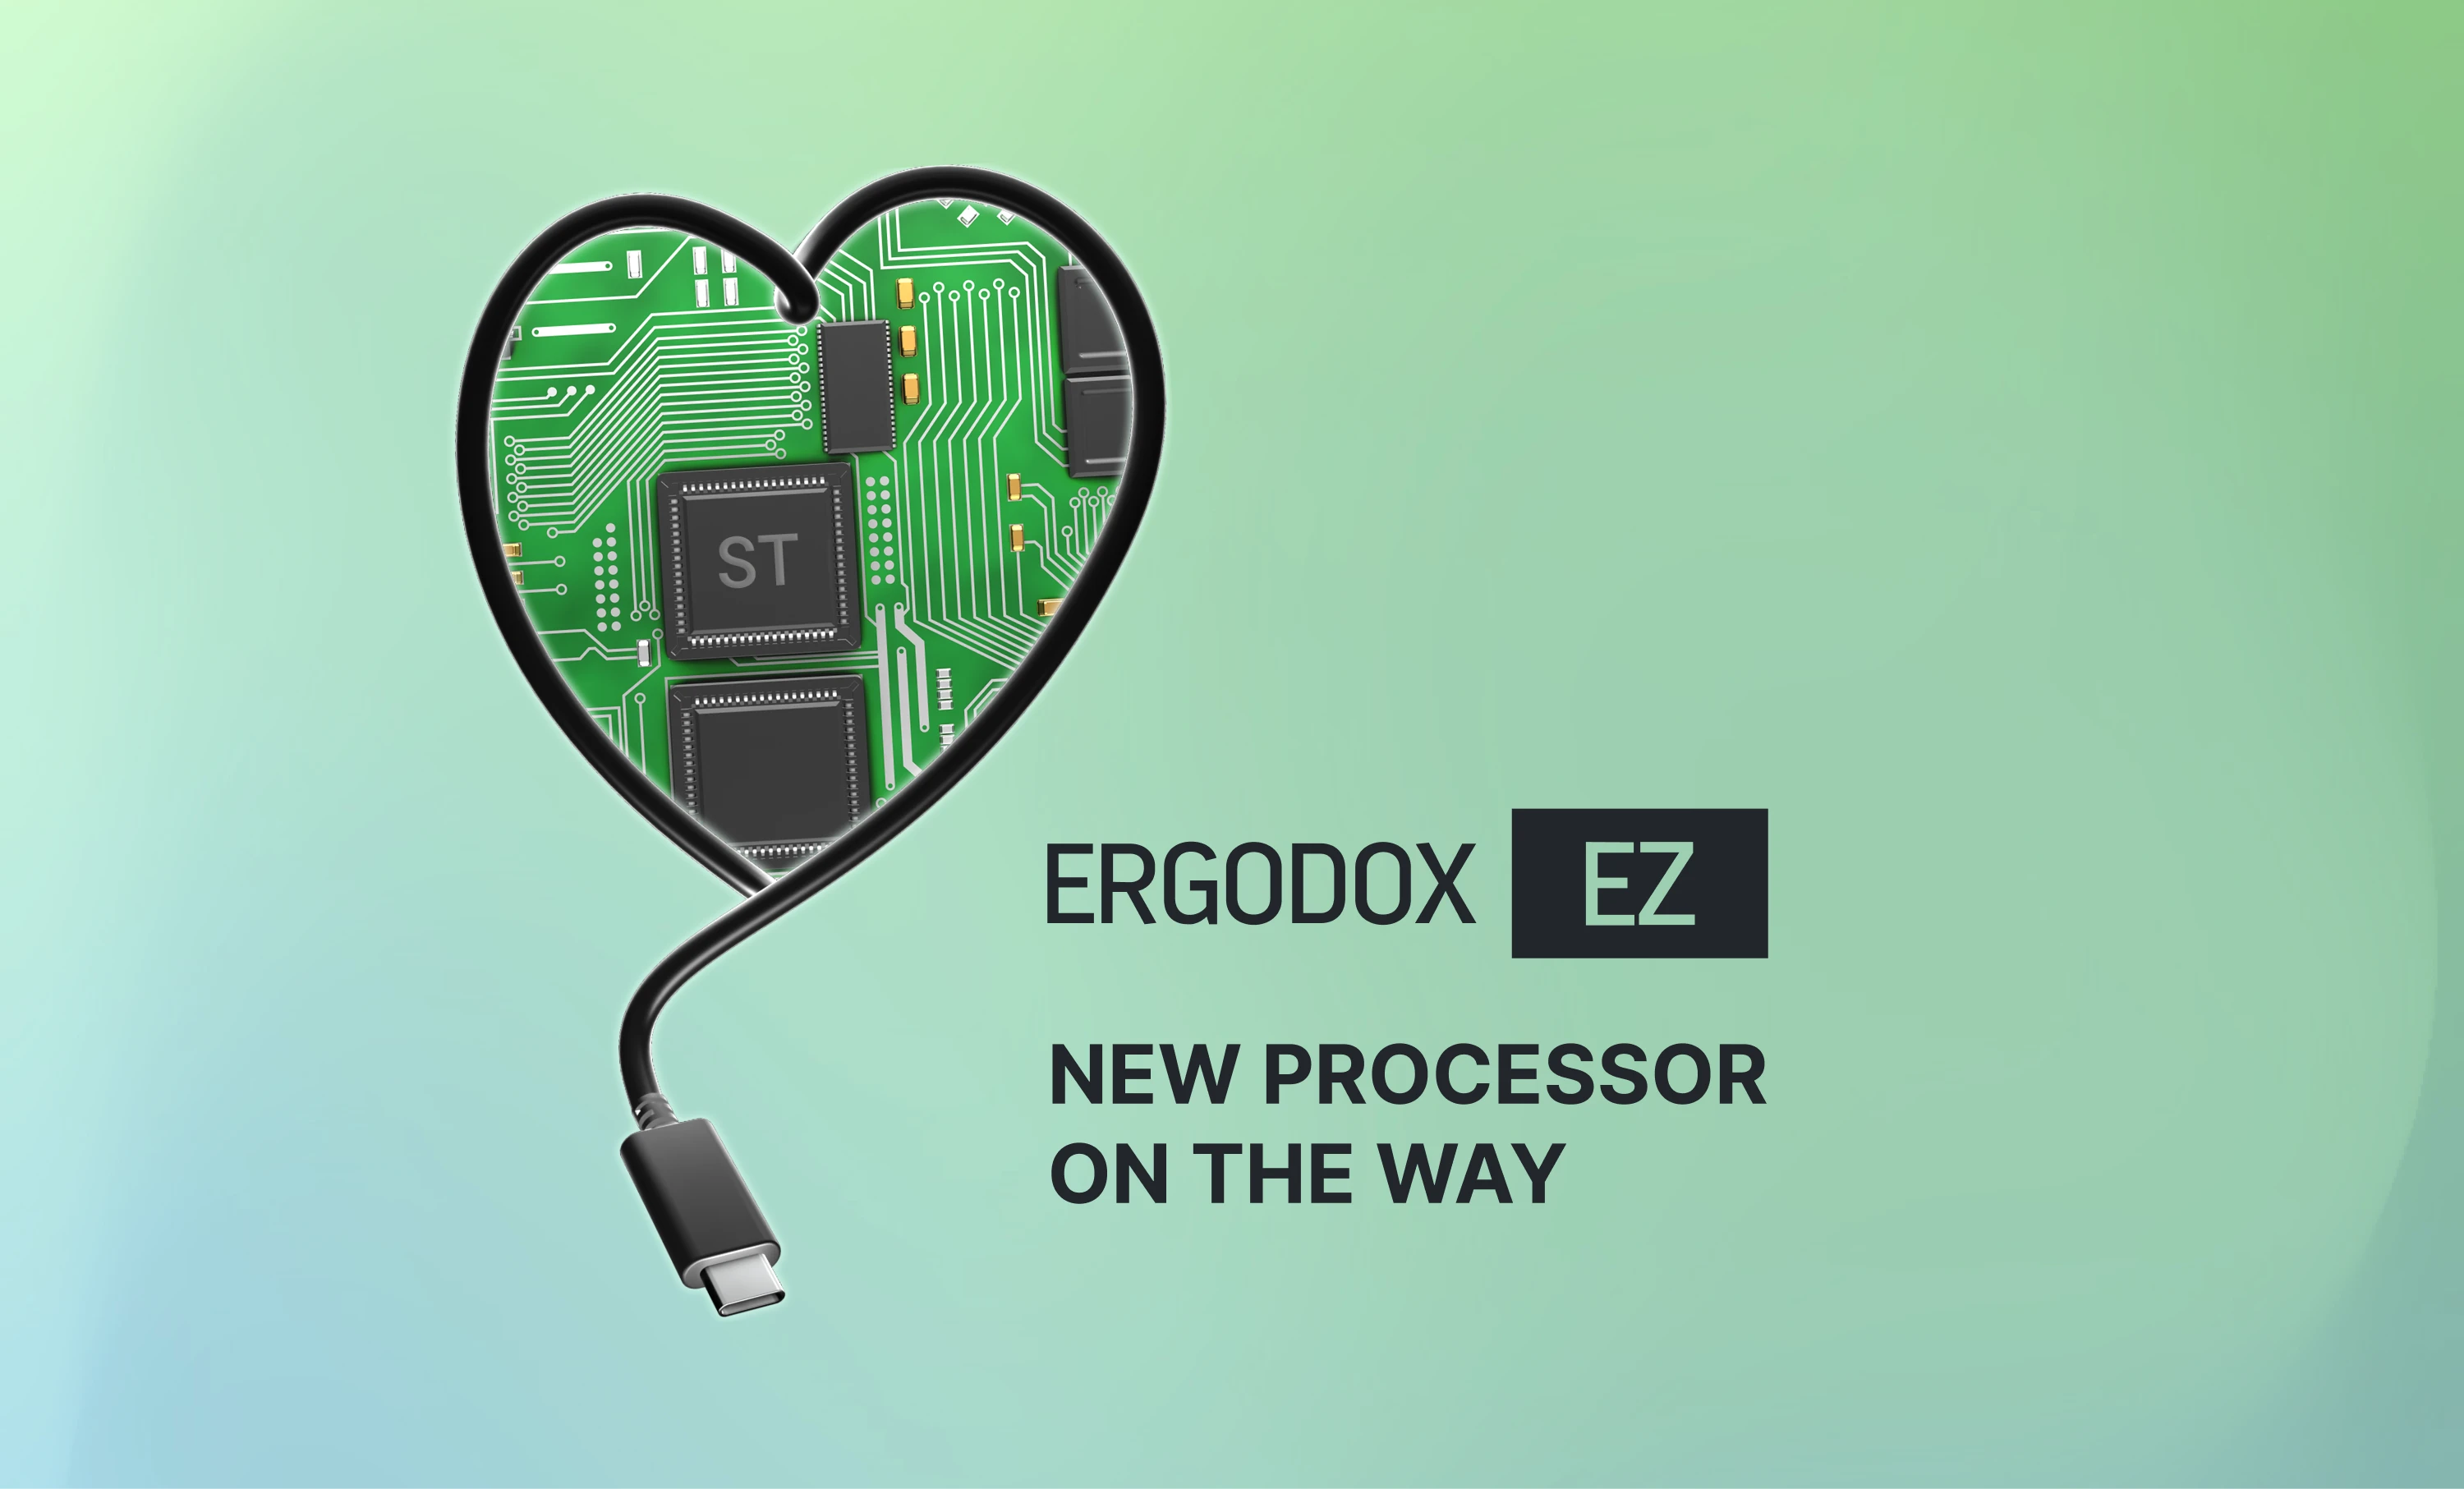 ErgoDox EZ ST is coming